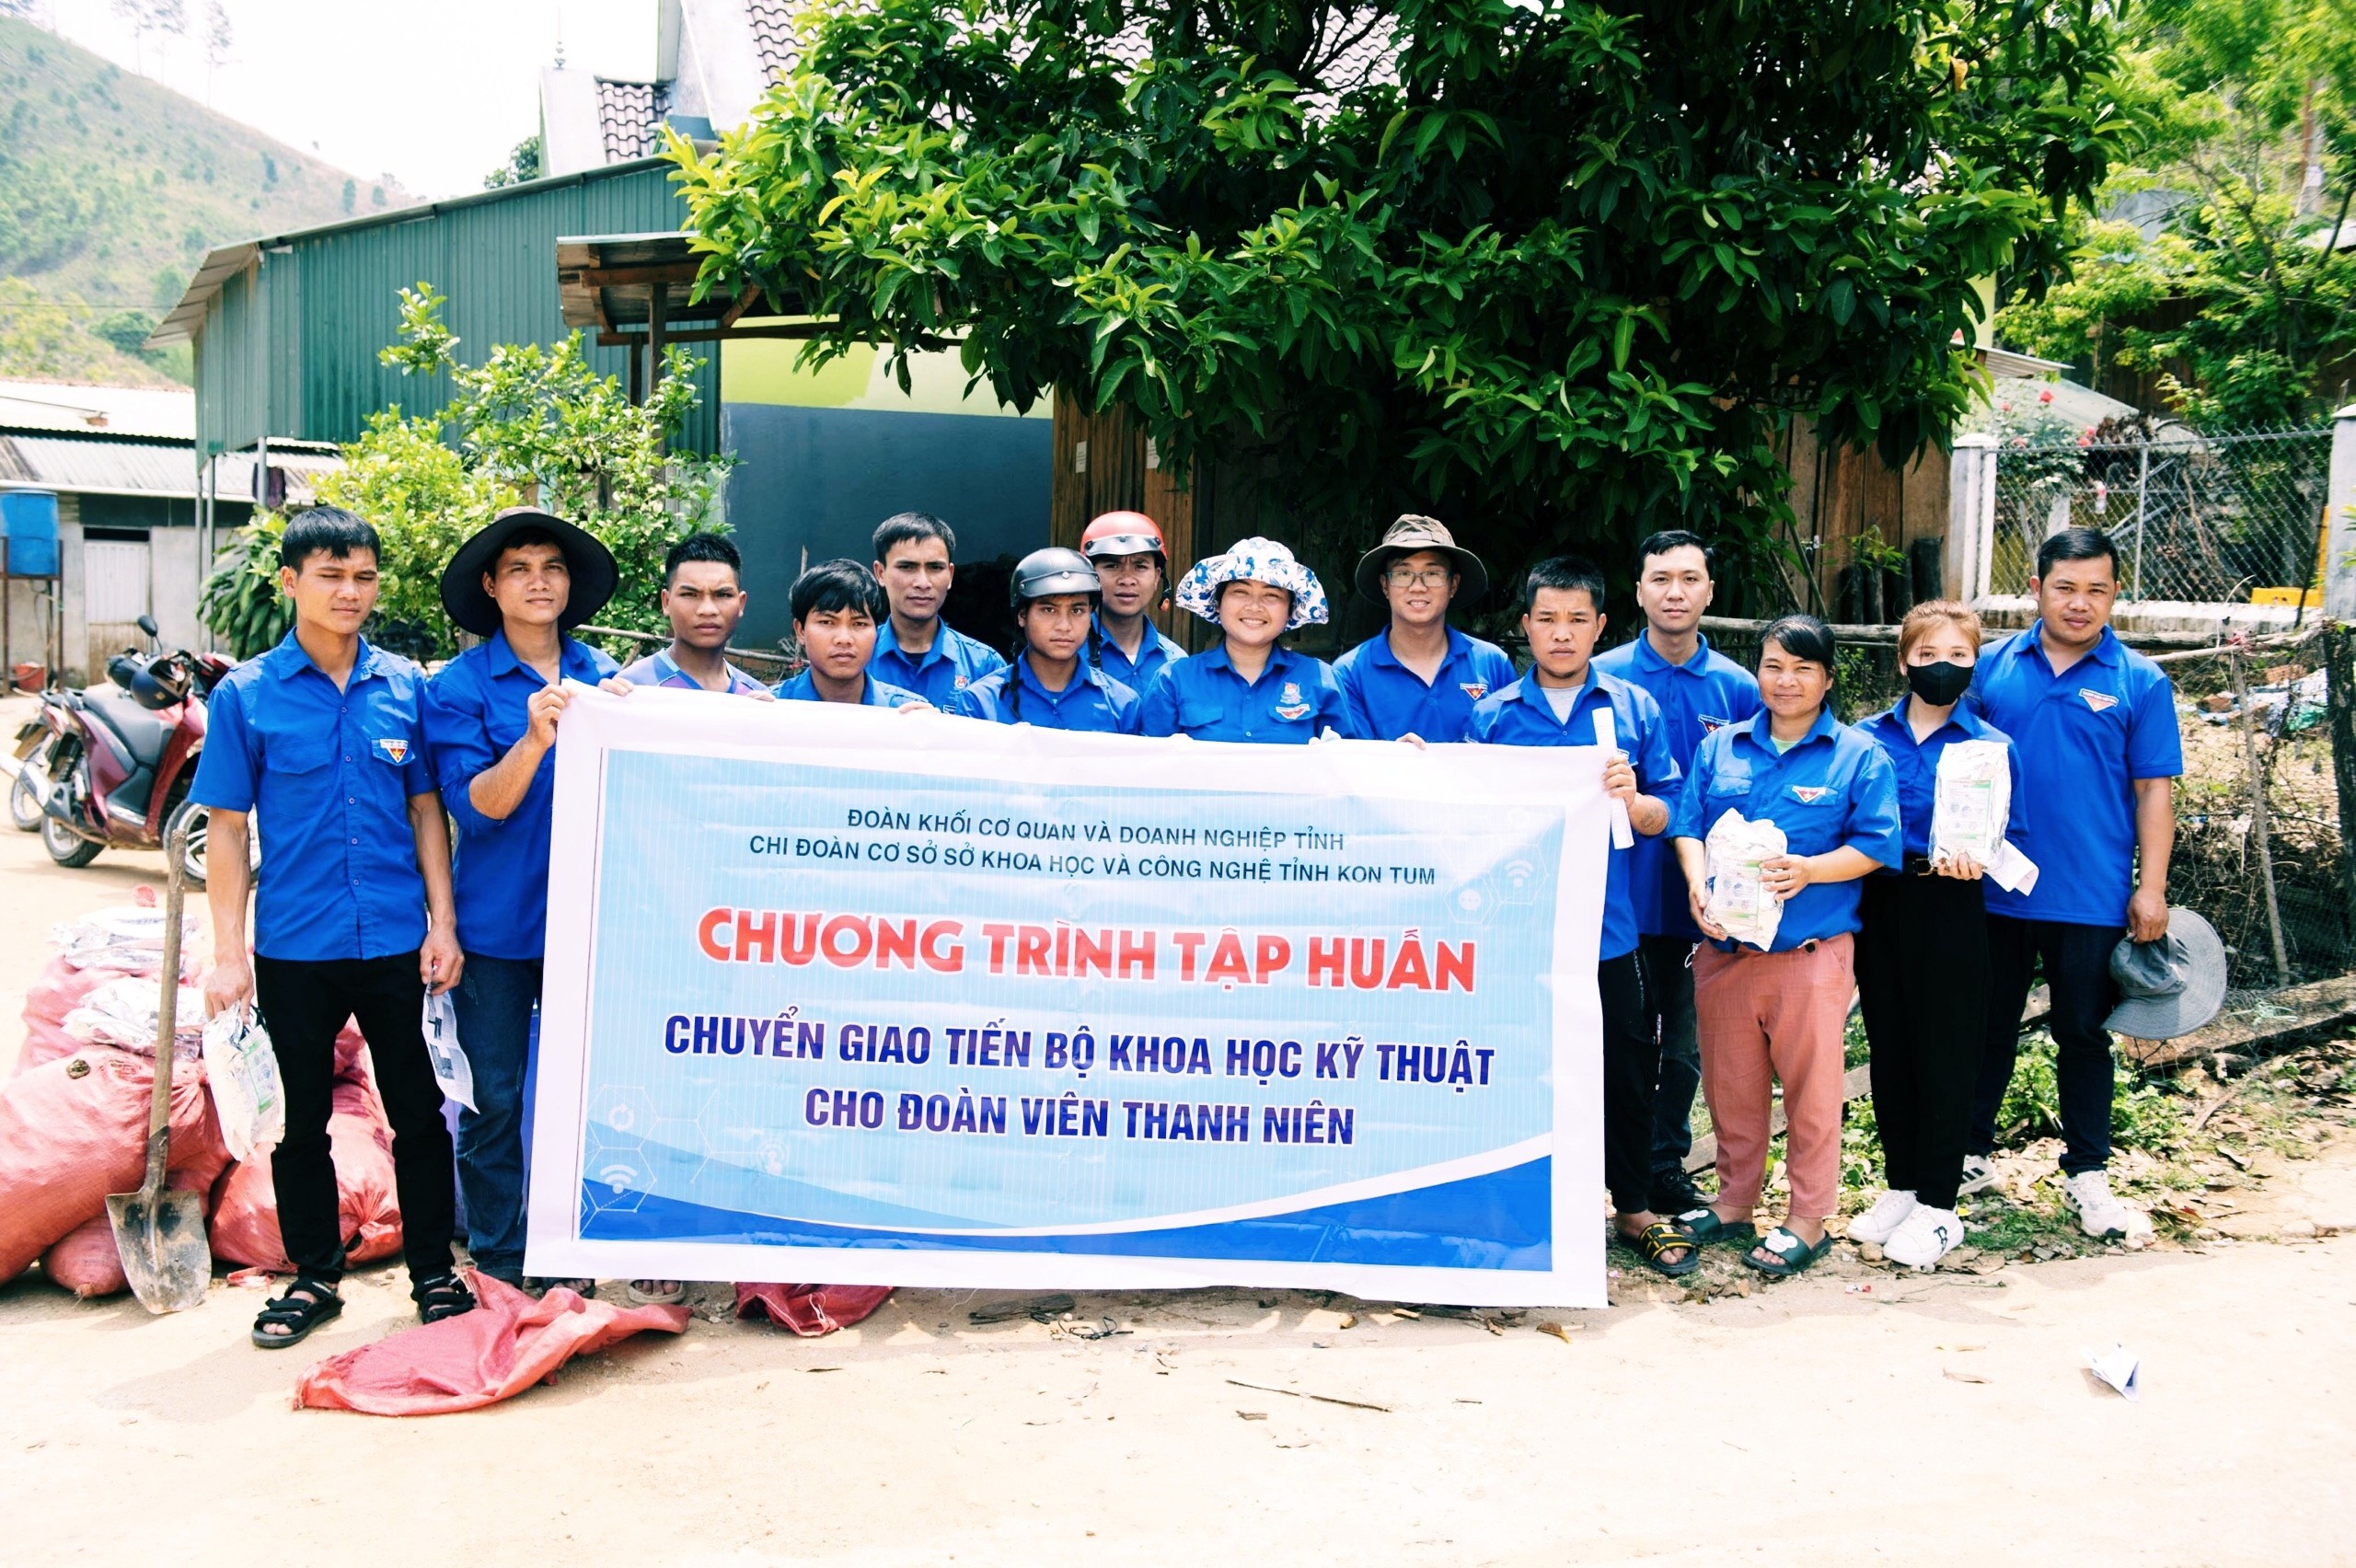 Chi đoàn Sở KH&CN phối hợp tổ chức Chương trình “Trao yêu thương về với Biên cương” tại huyện Đăk Glei và tập huấn chuyến giao KHKT cho ĐVTN